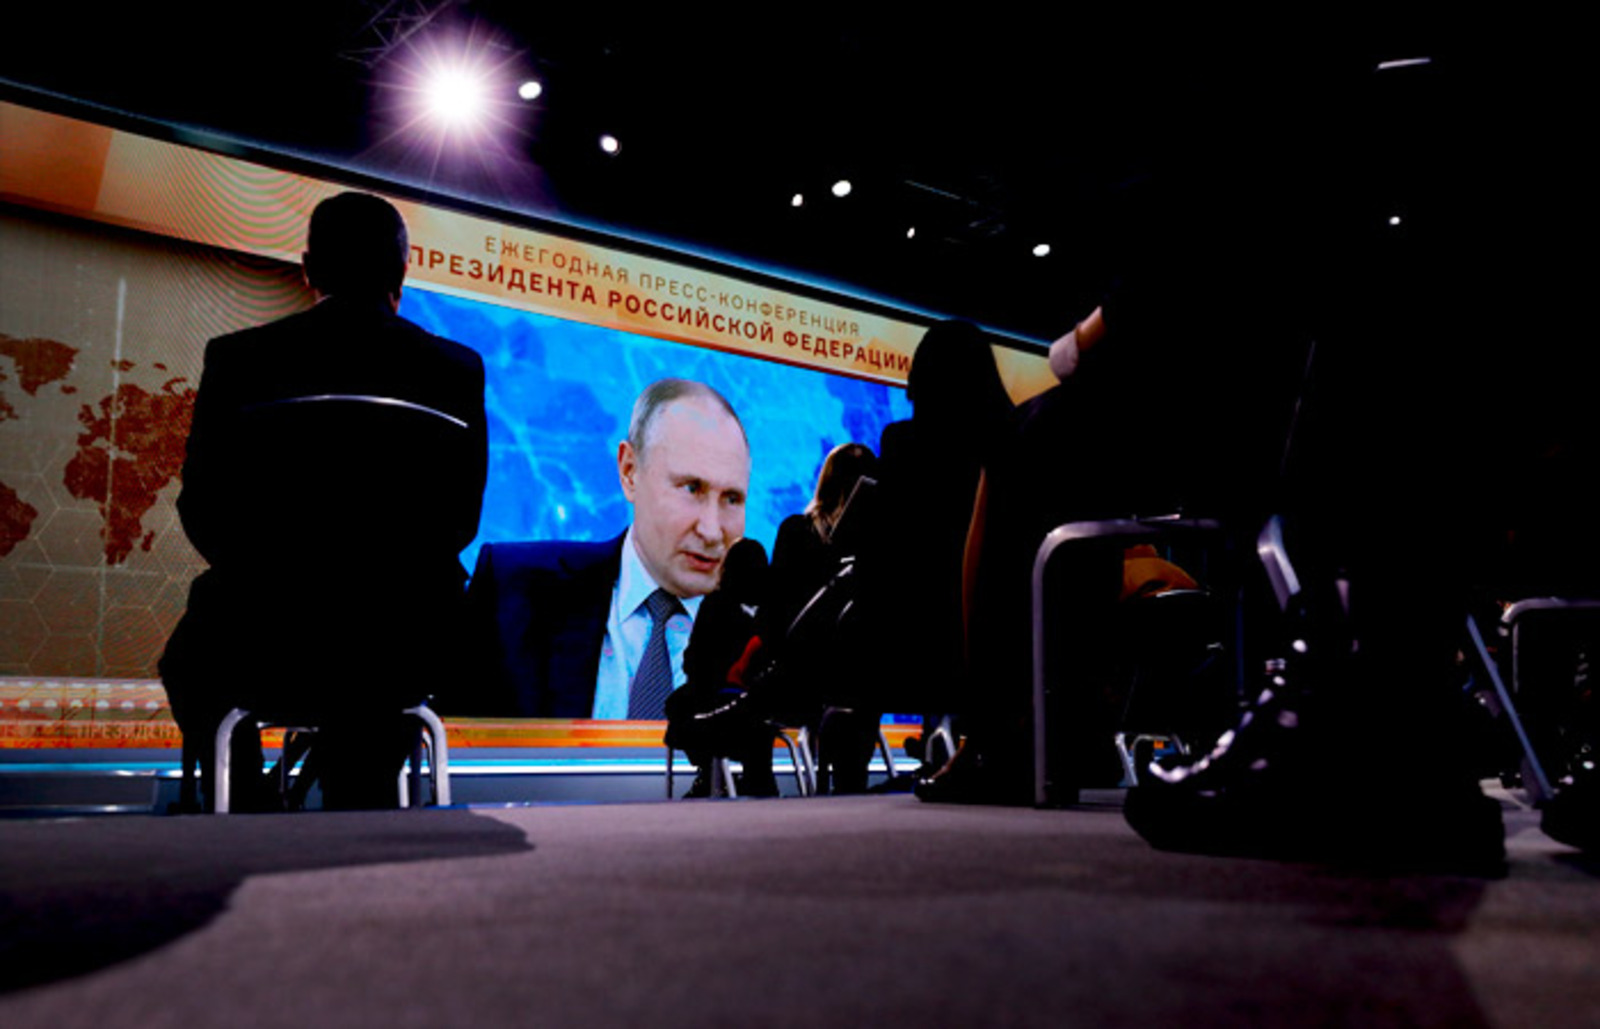 Пресс-конференция Путина пройдет очно в московском Манеже 23 декабря